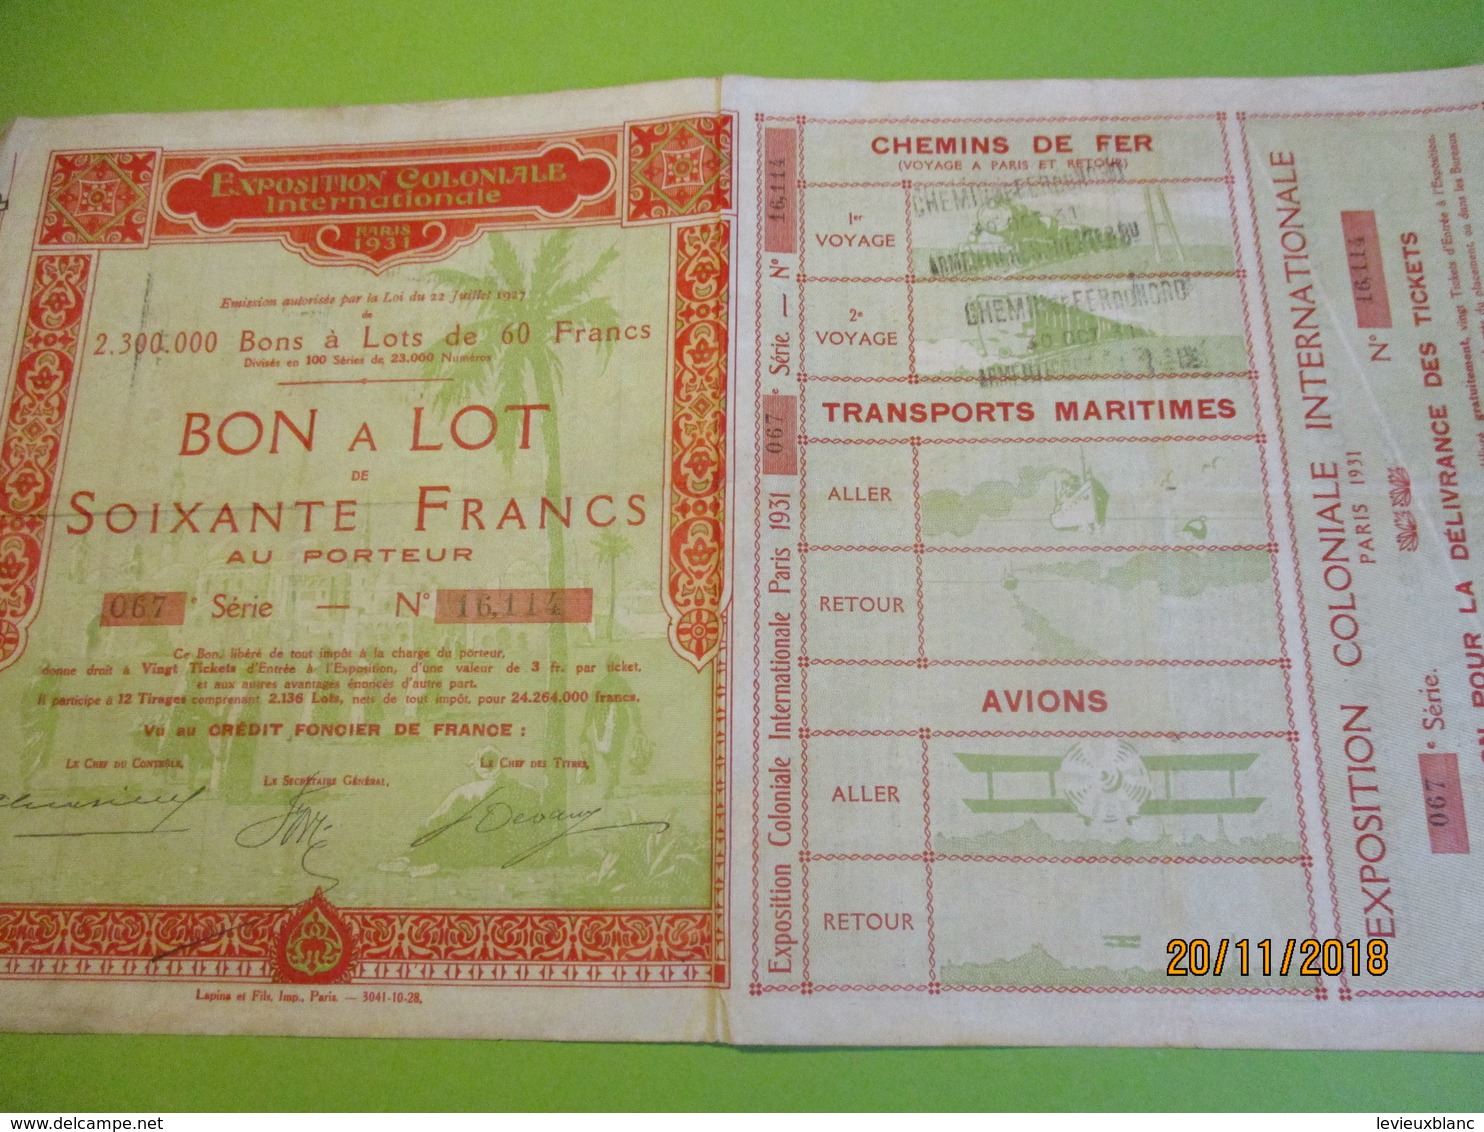 Bon à Lot 60 Fr Porteur/Exposition Coloniale Internationale/Imp Lapins & Fils/PARIS/1931                 ACT153 - Turismo